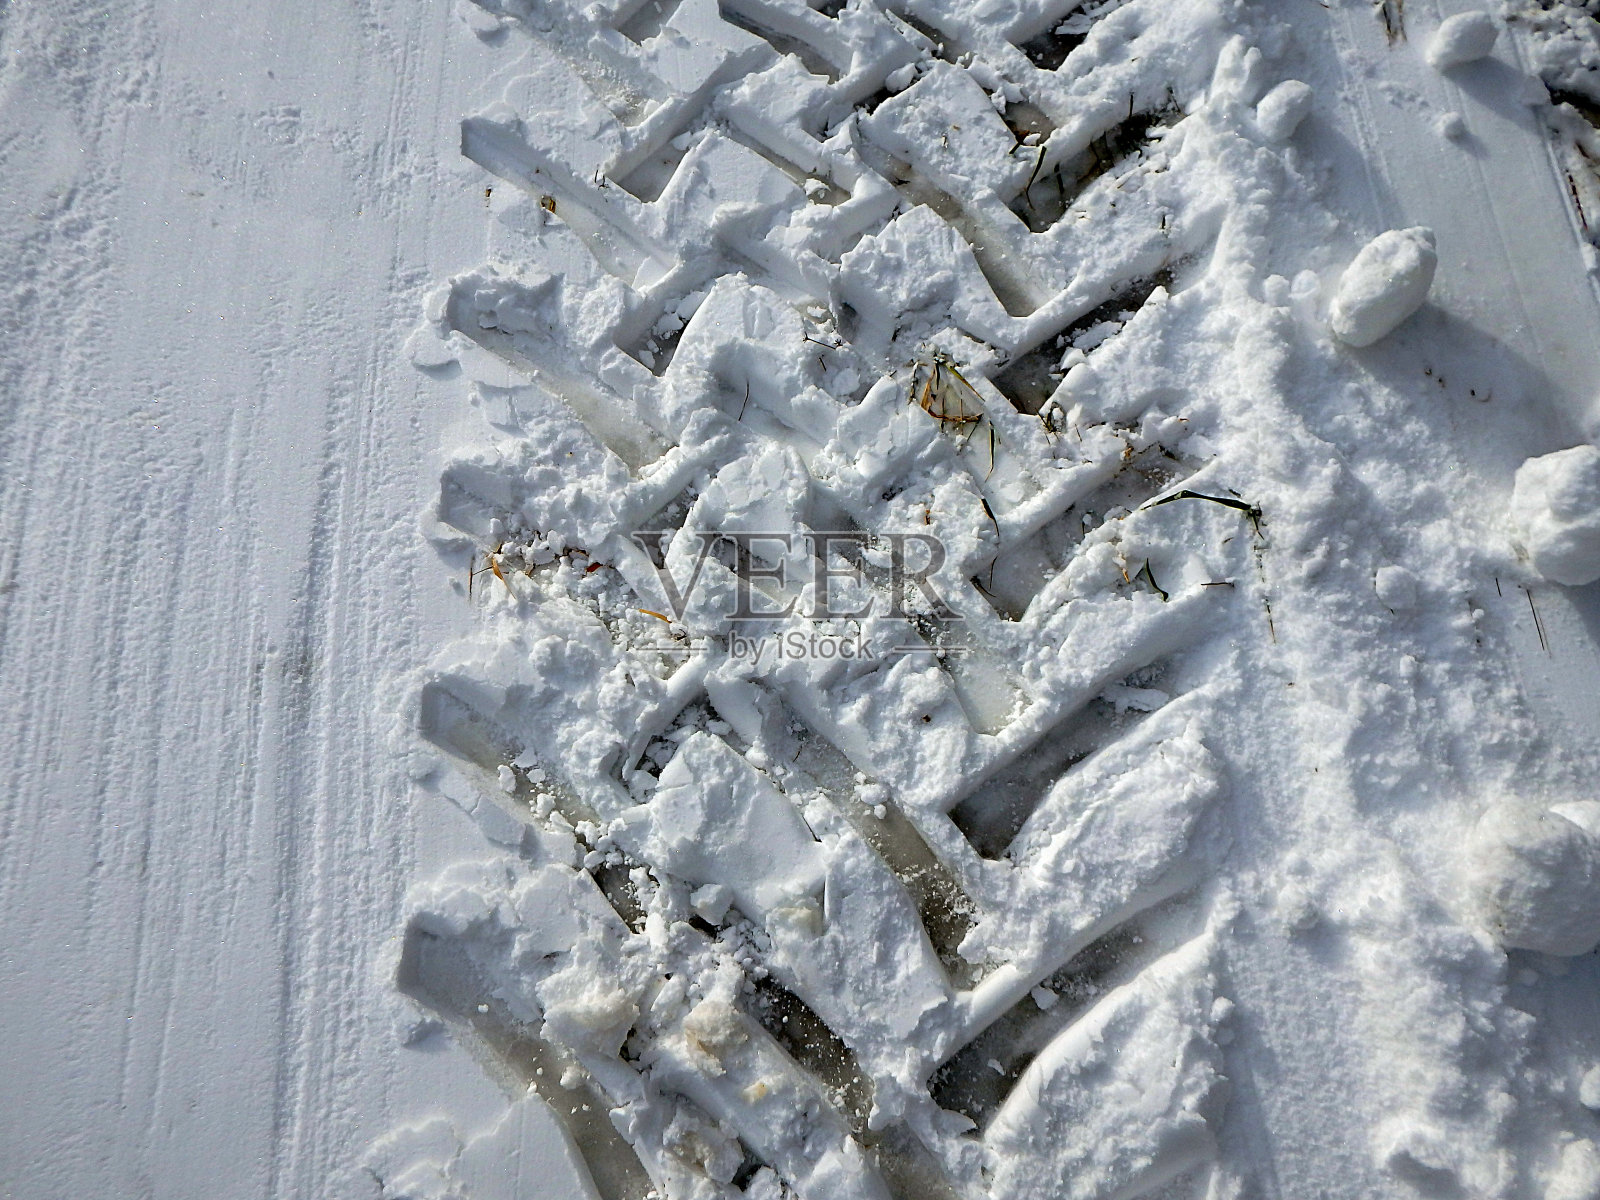 雪地上有车辆的痕迹照片摄影图片